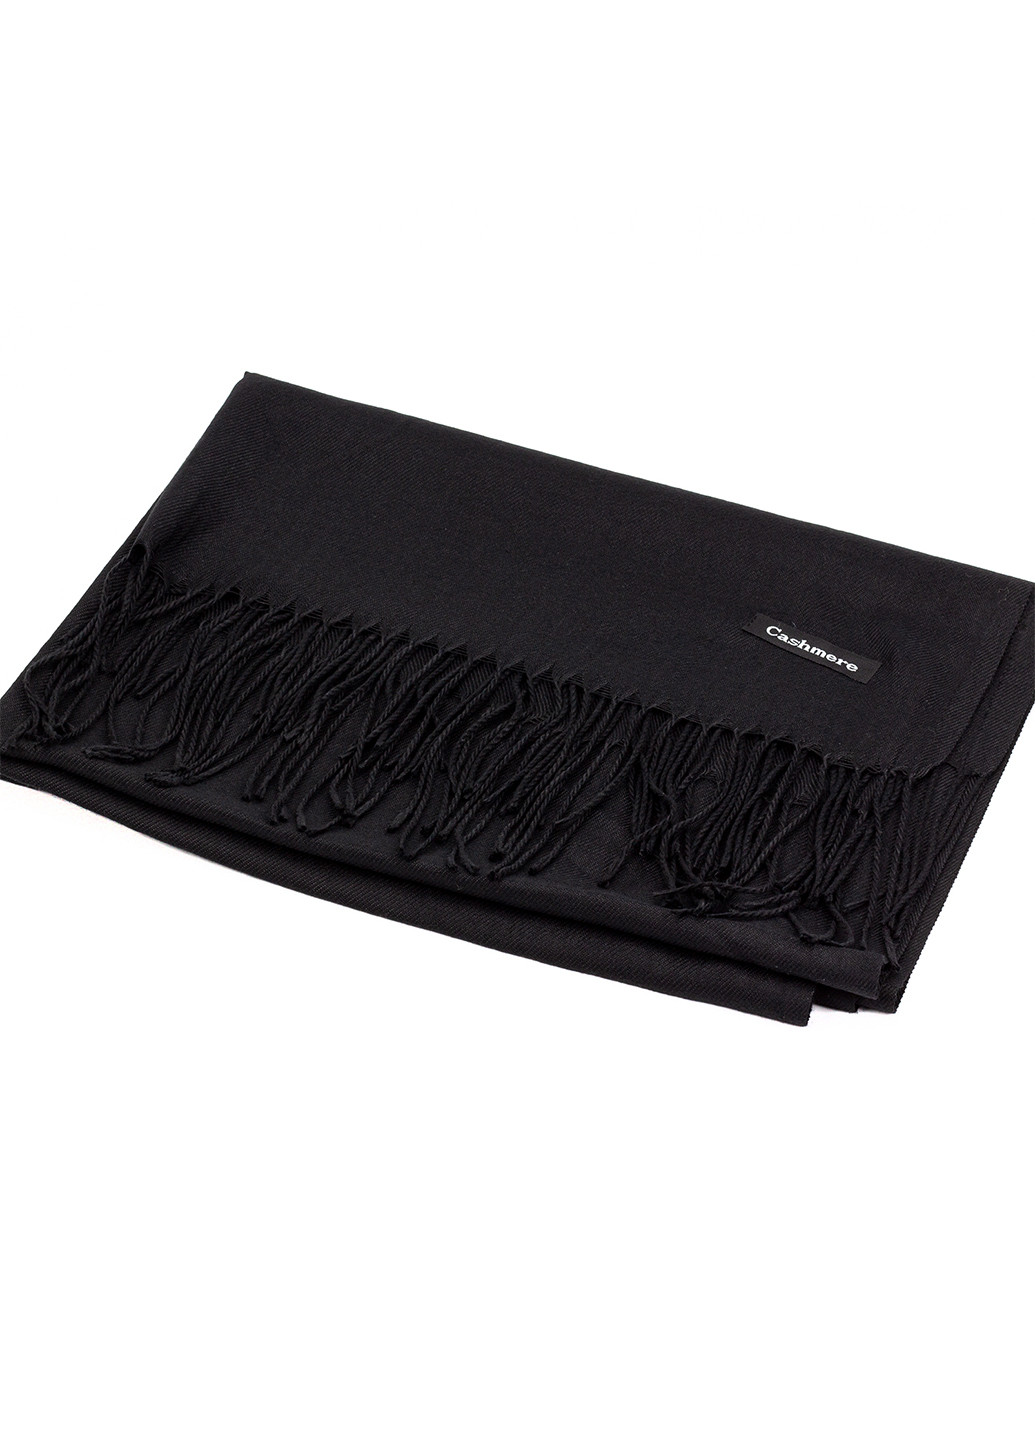 Женский кашемировый шарф, черный Cashmere S92018 однотонный чёрный кэжуал акрил, кашемир